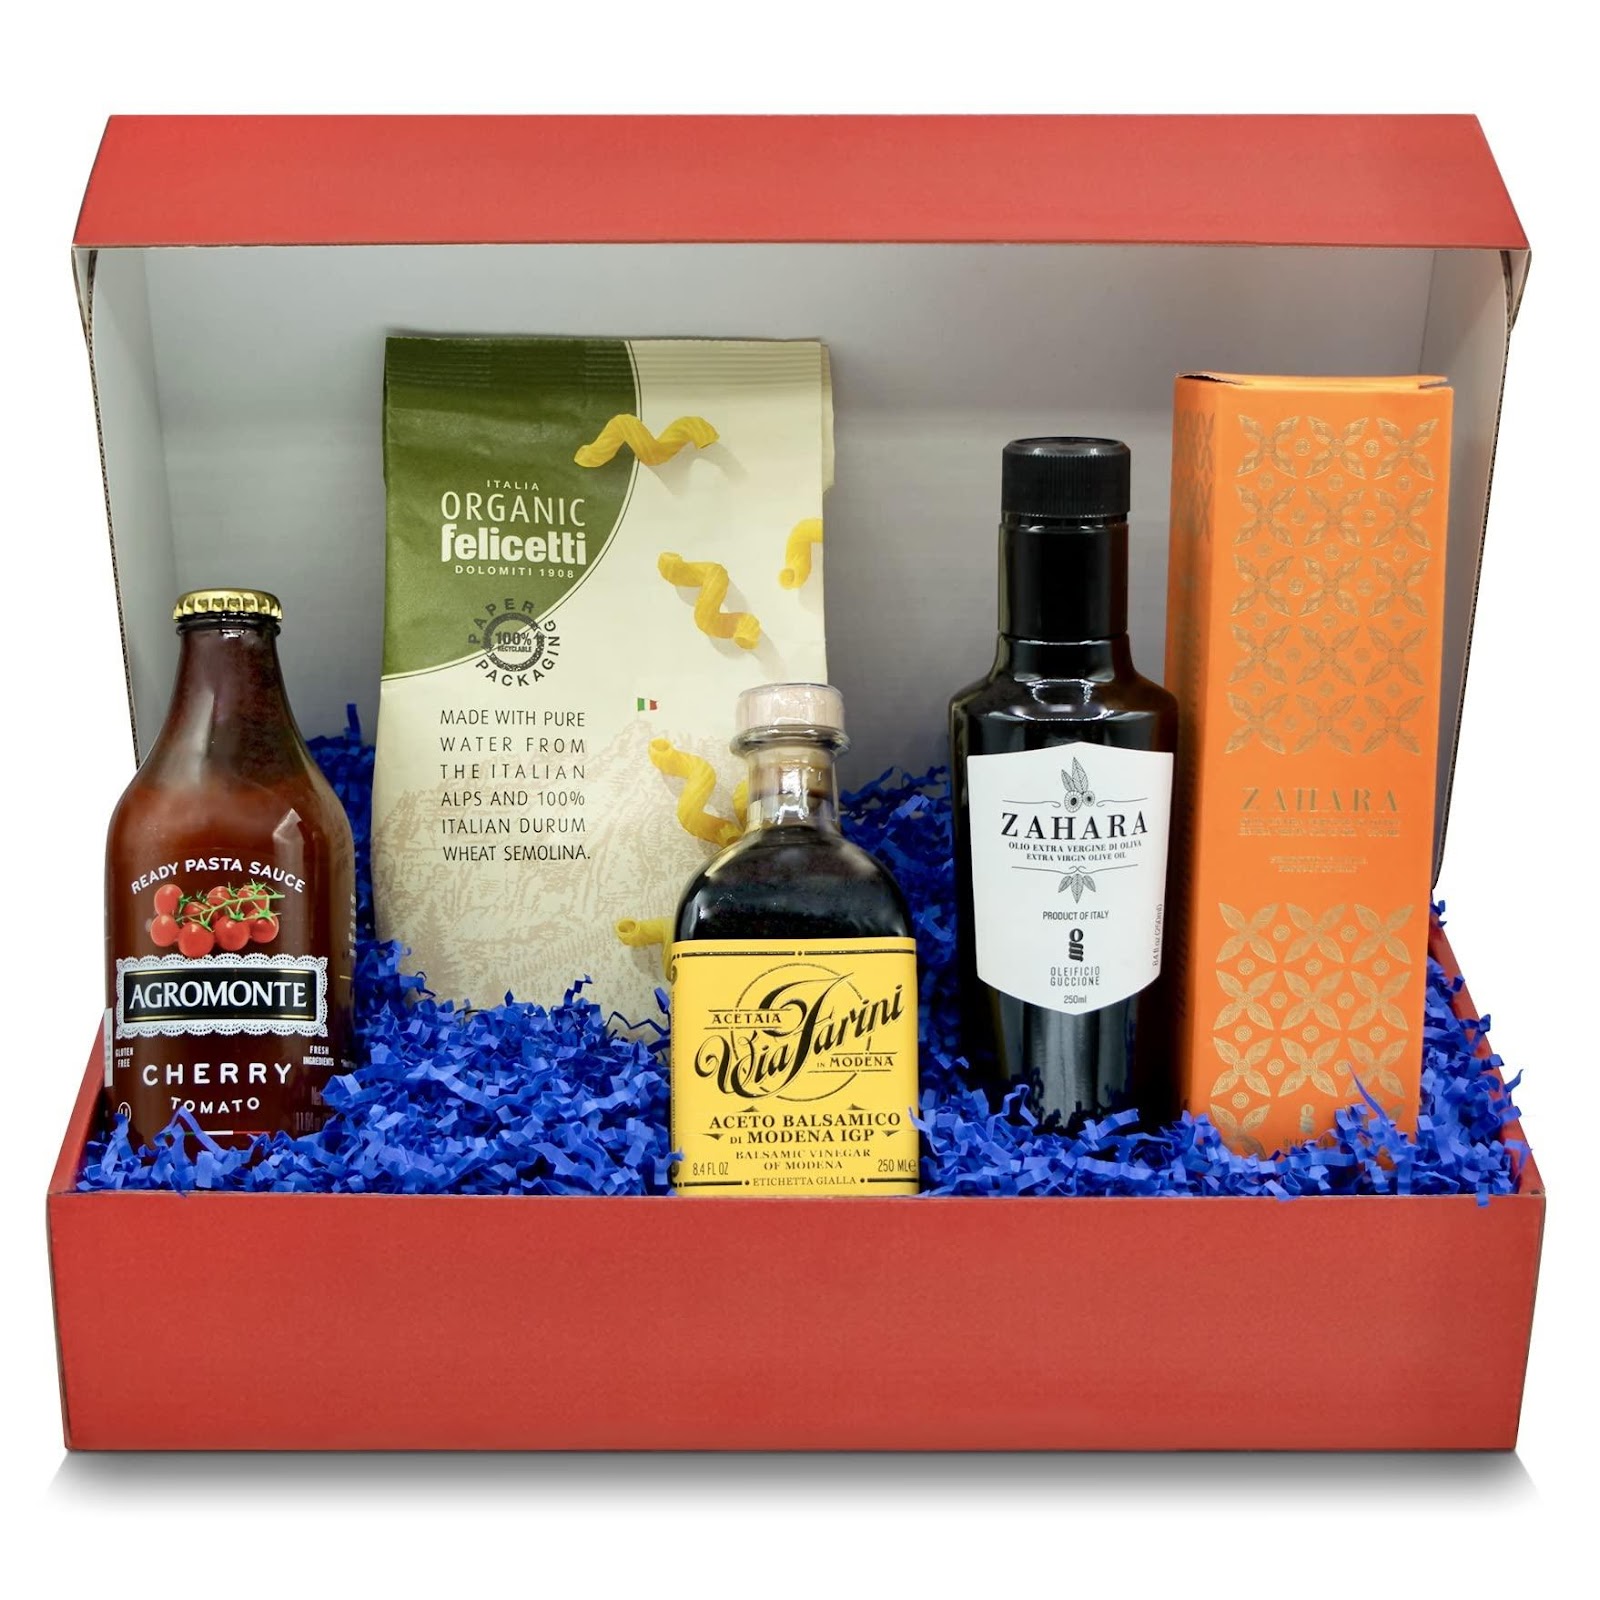 BRAVA GIULIA Premium Artisanal Gift Box